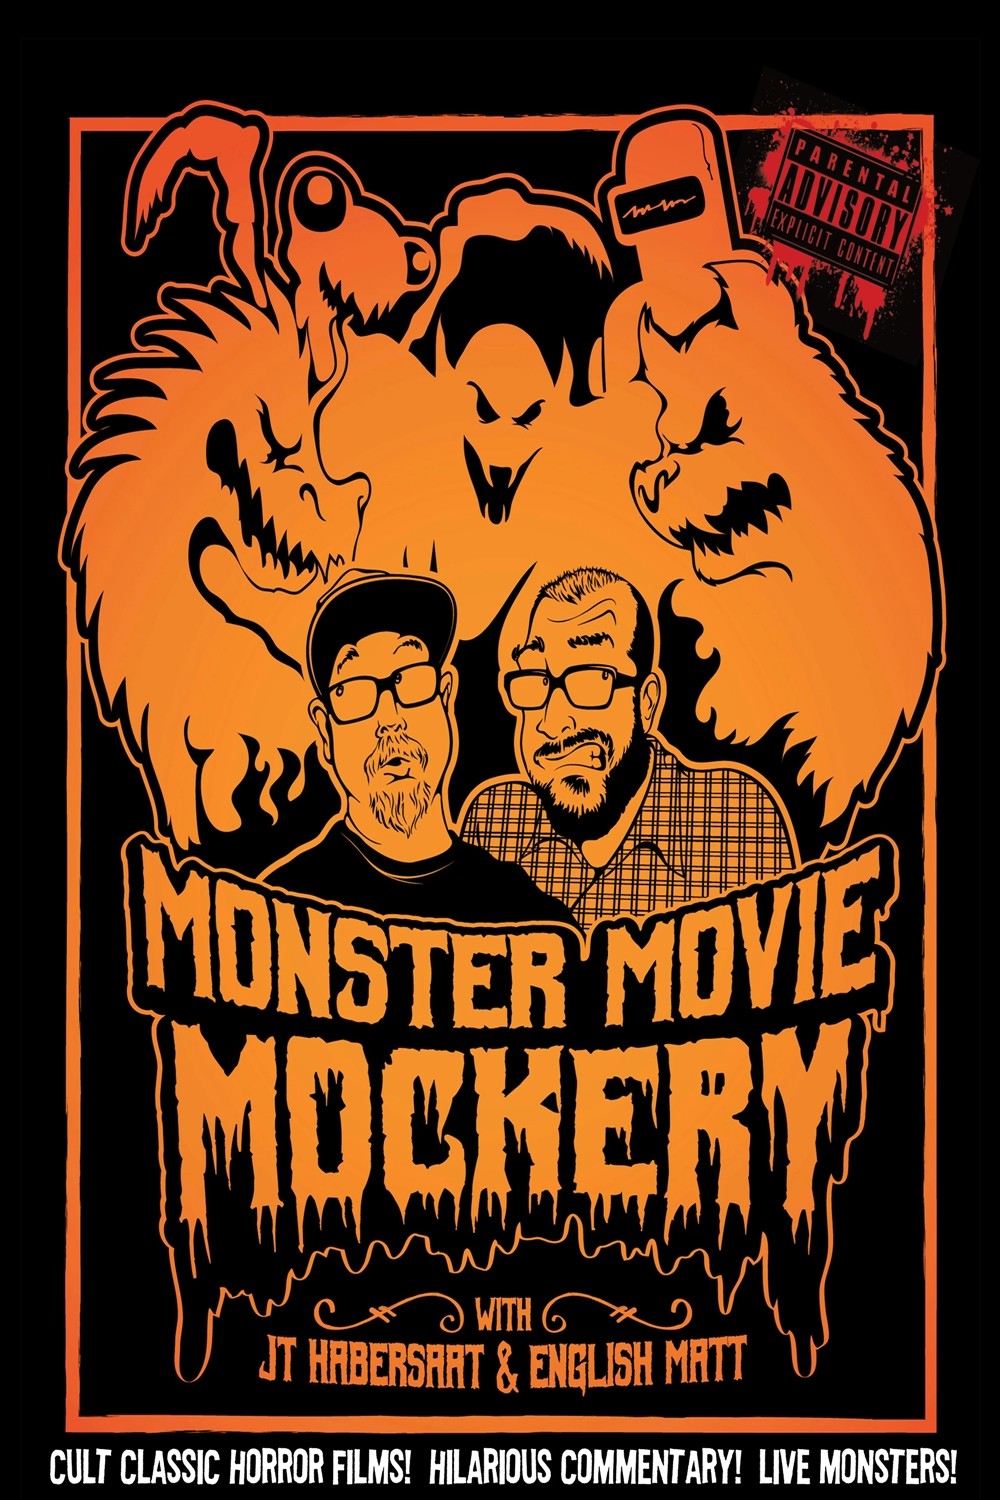 Monster Movie Mockery